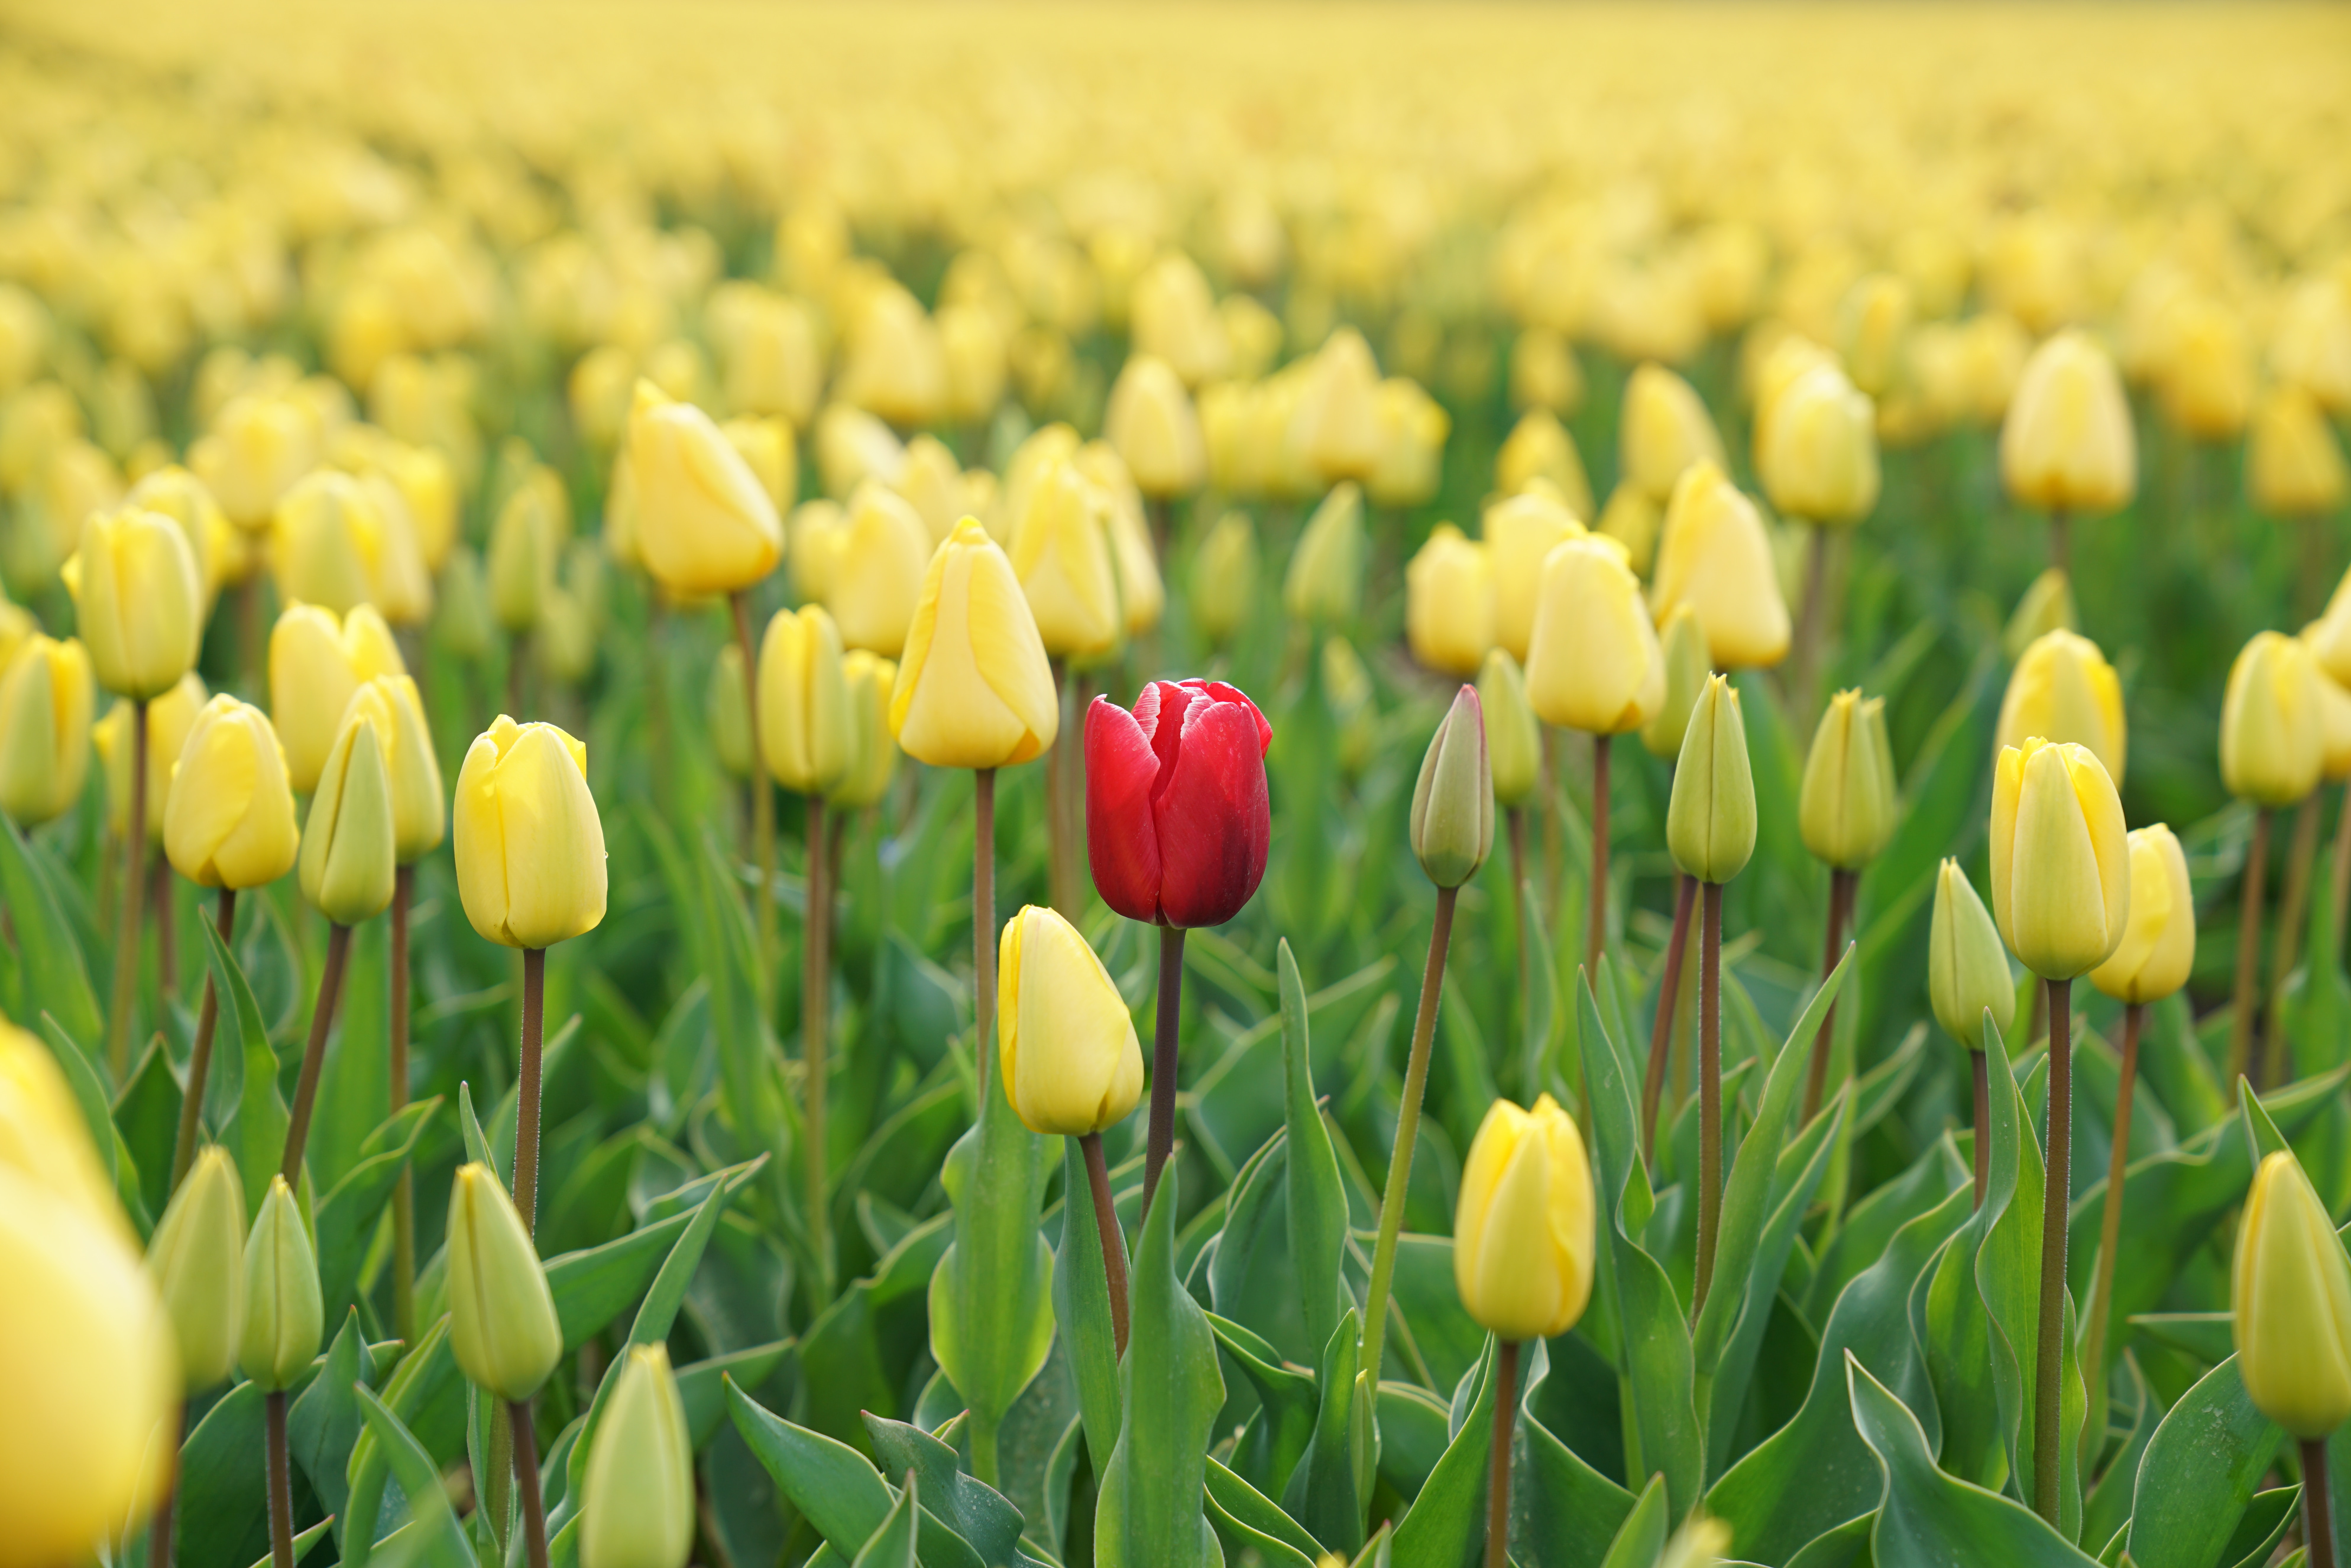 Tulips. Photo by Rupert Britton on Unsplash